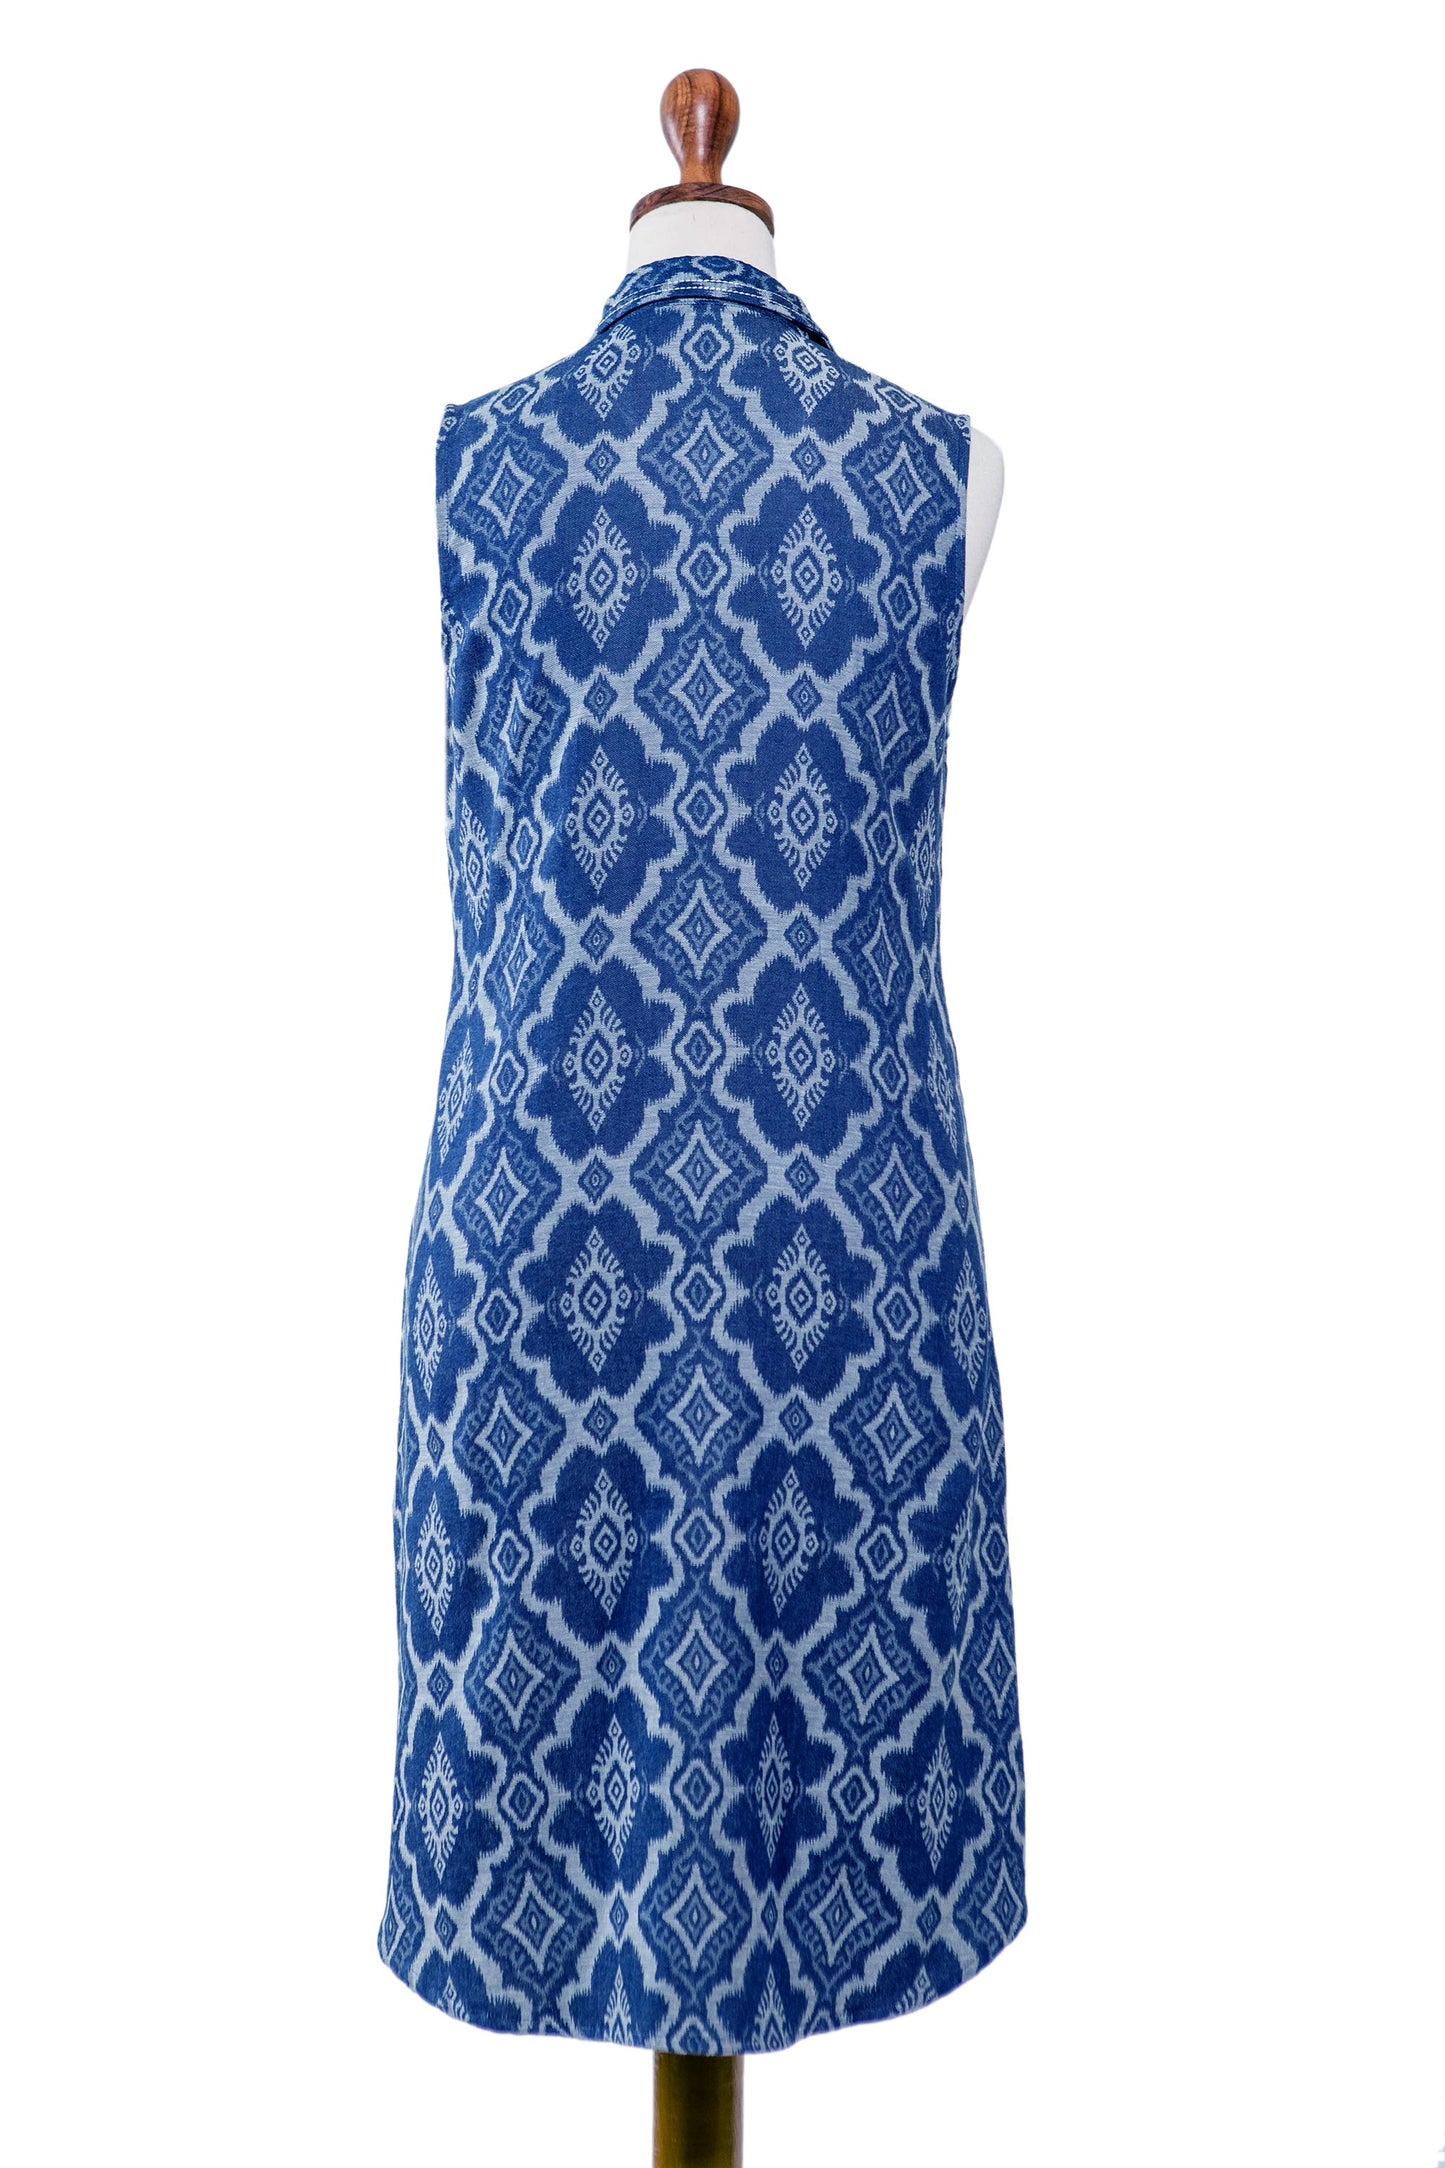 Eyeful Blue 100% Cotton Shirt Dress with Geometric Pattern